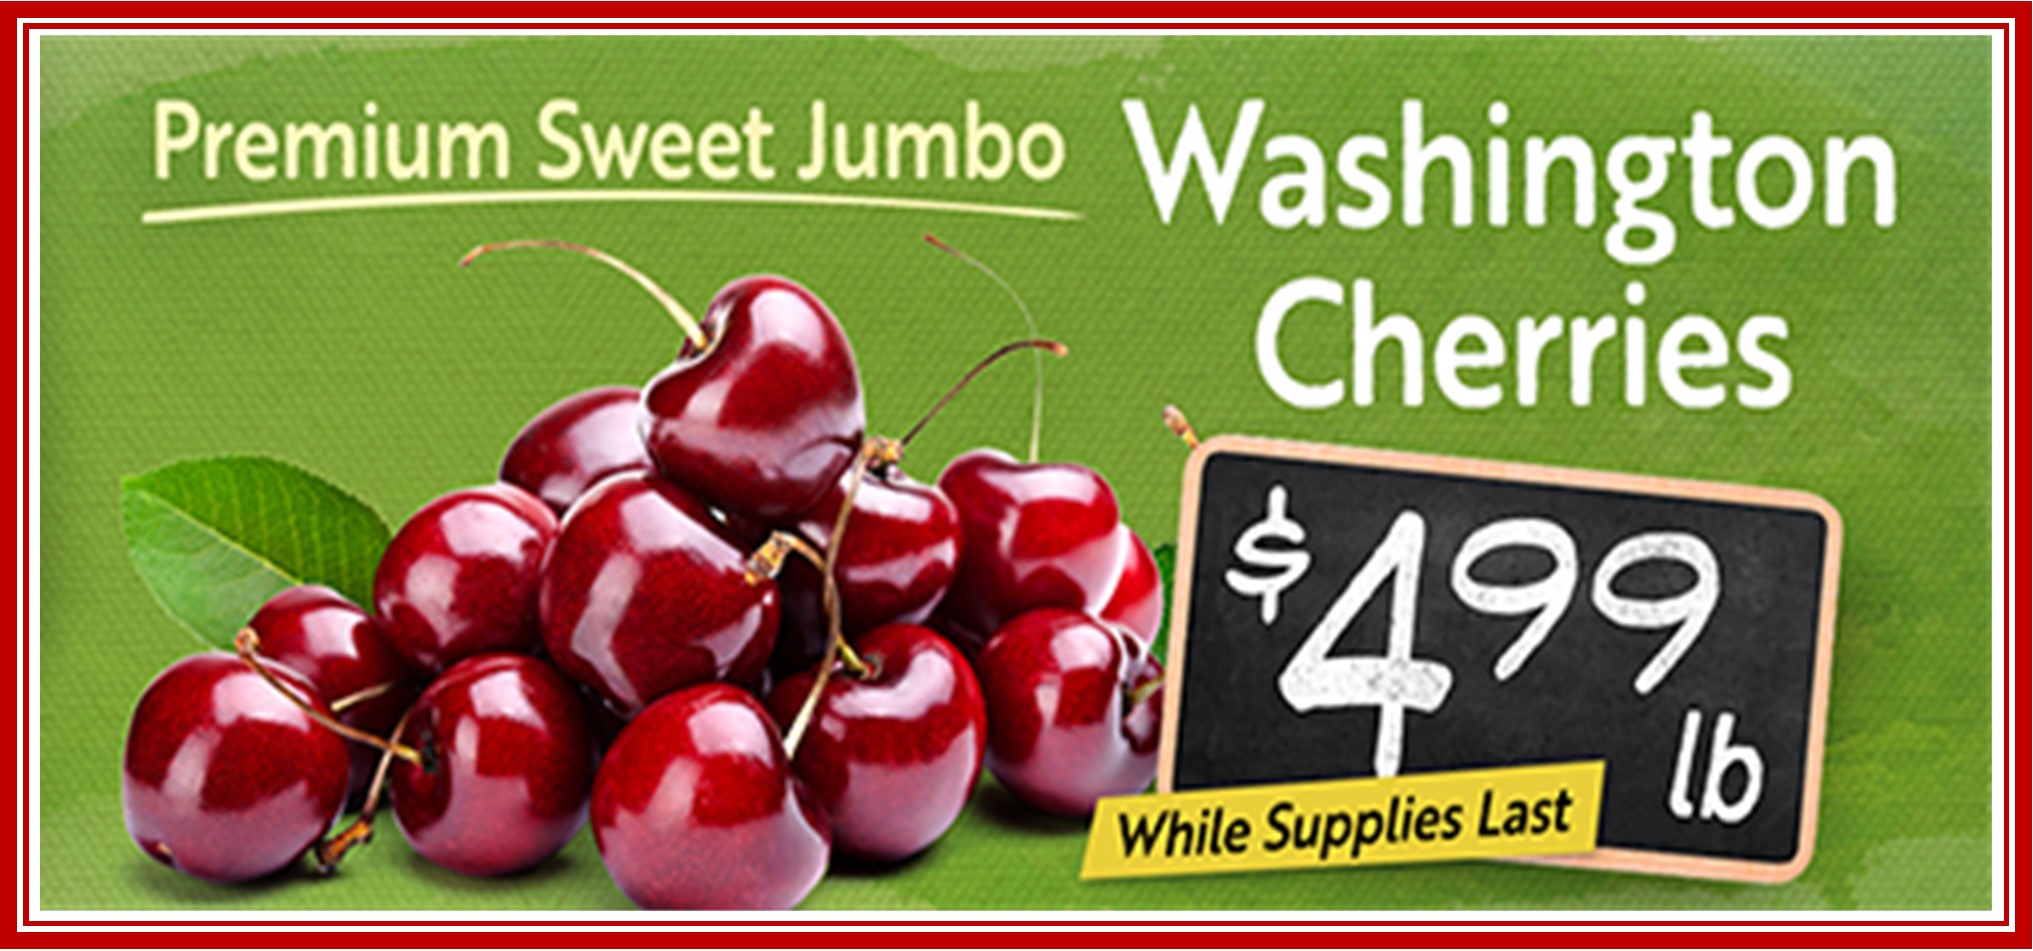 Cherries Washington 499.jpg